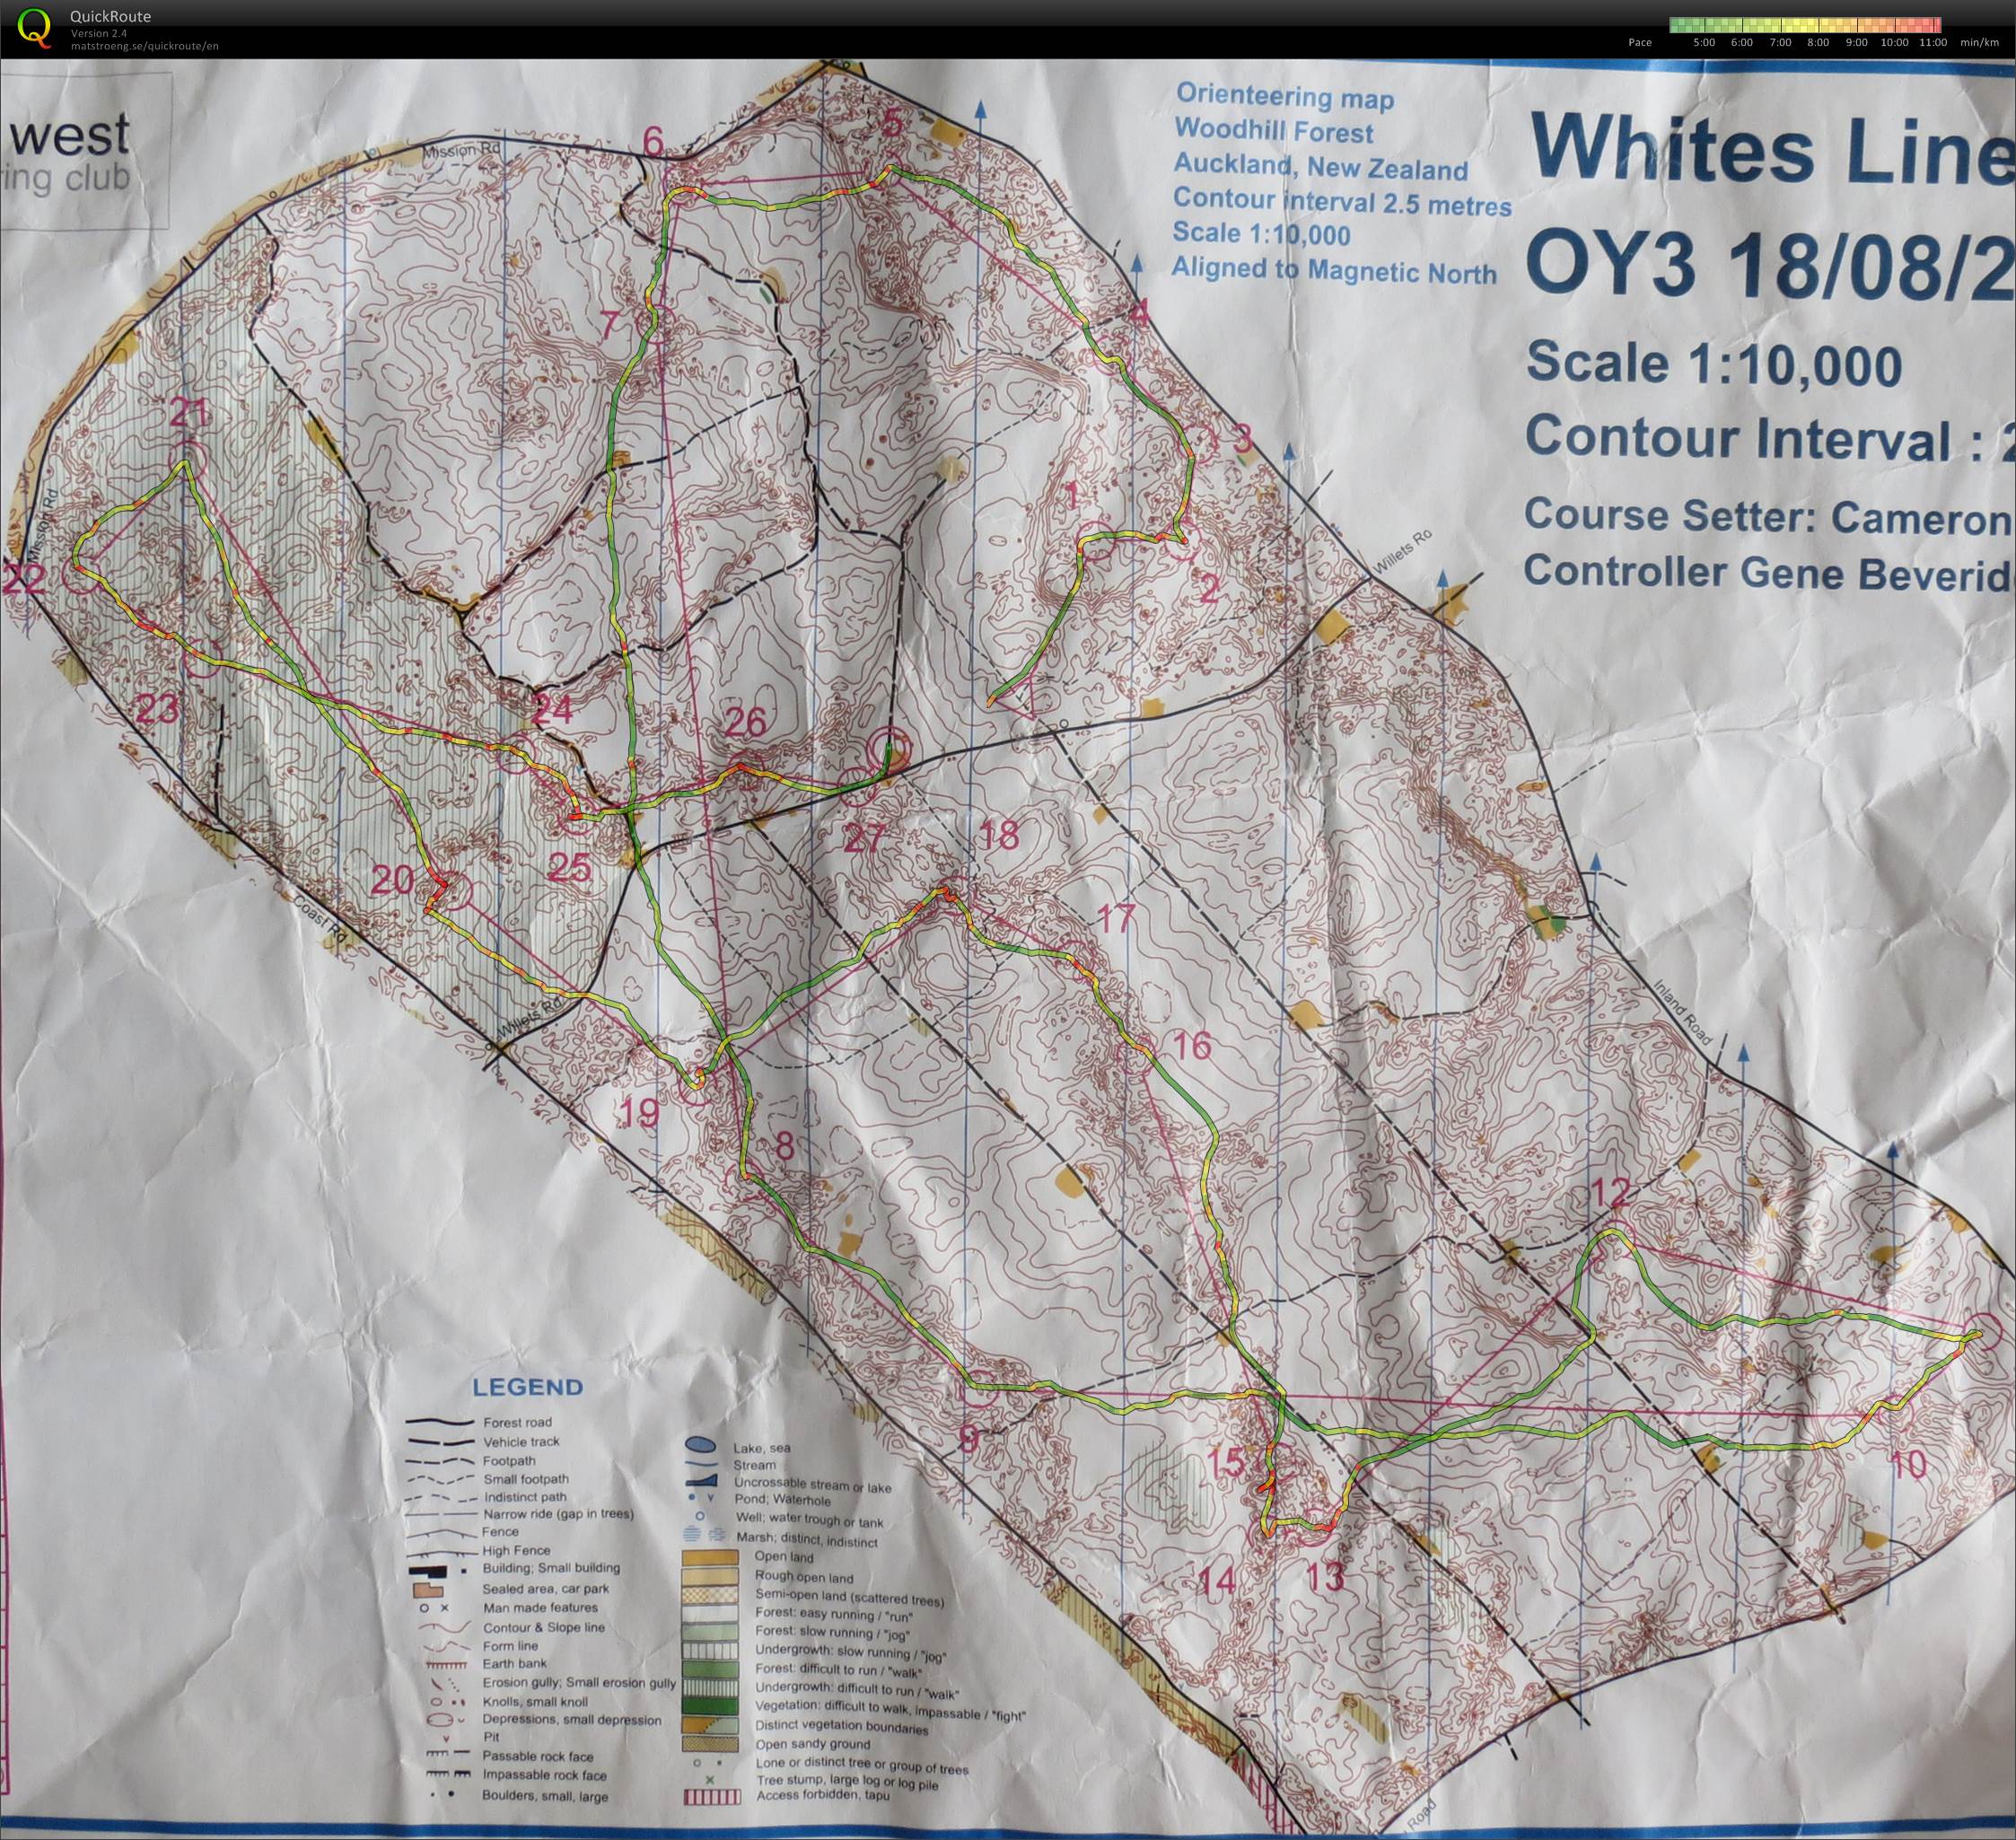 OY3 2013 Whites Line (17-08-2013)